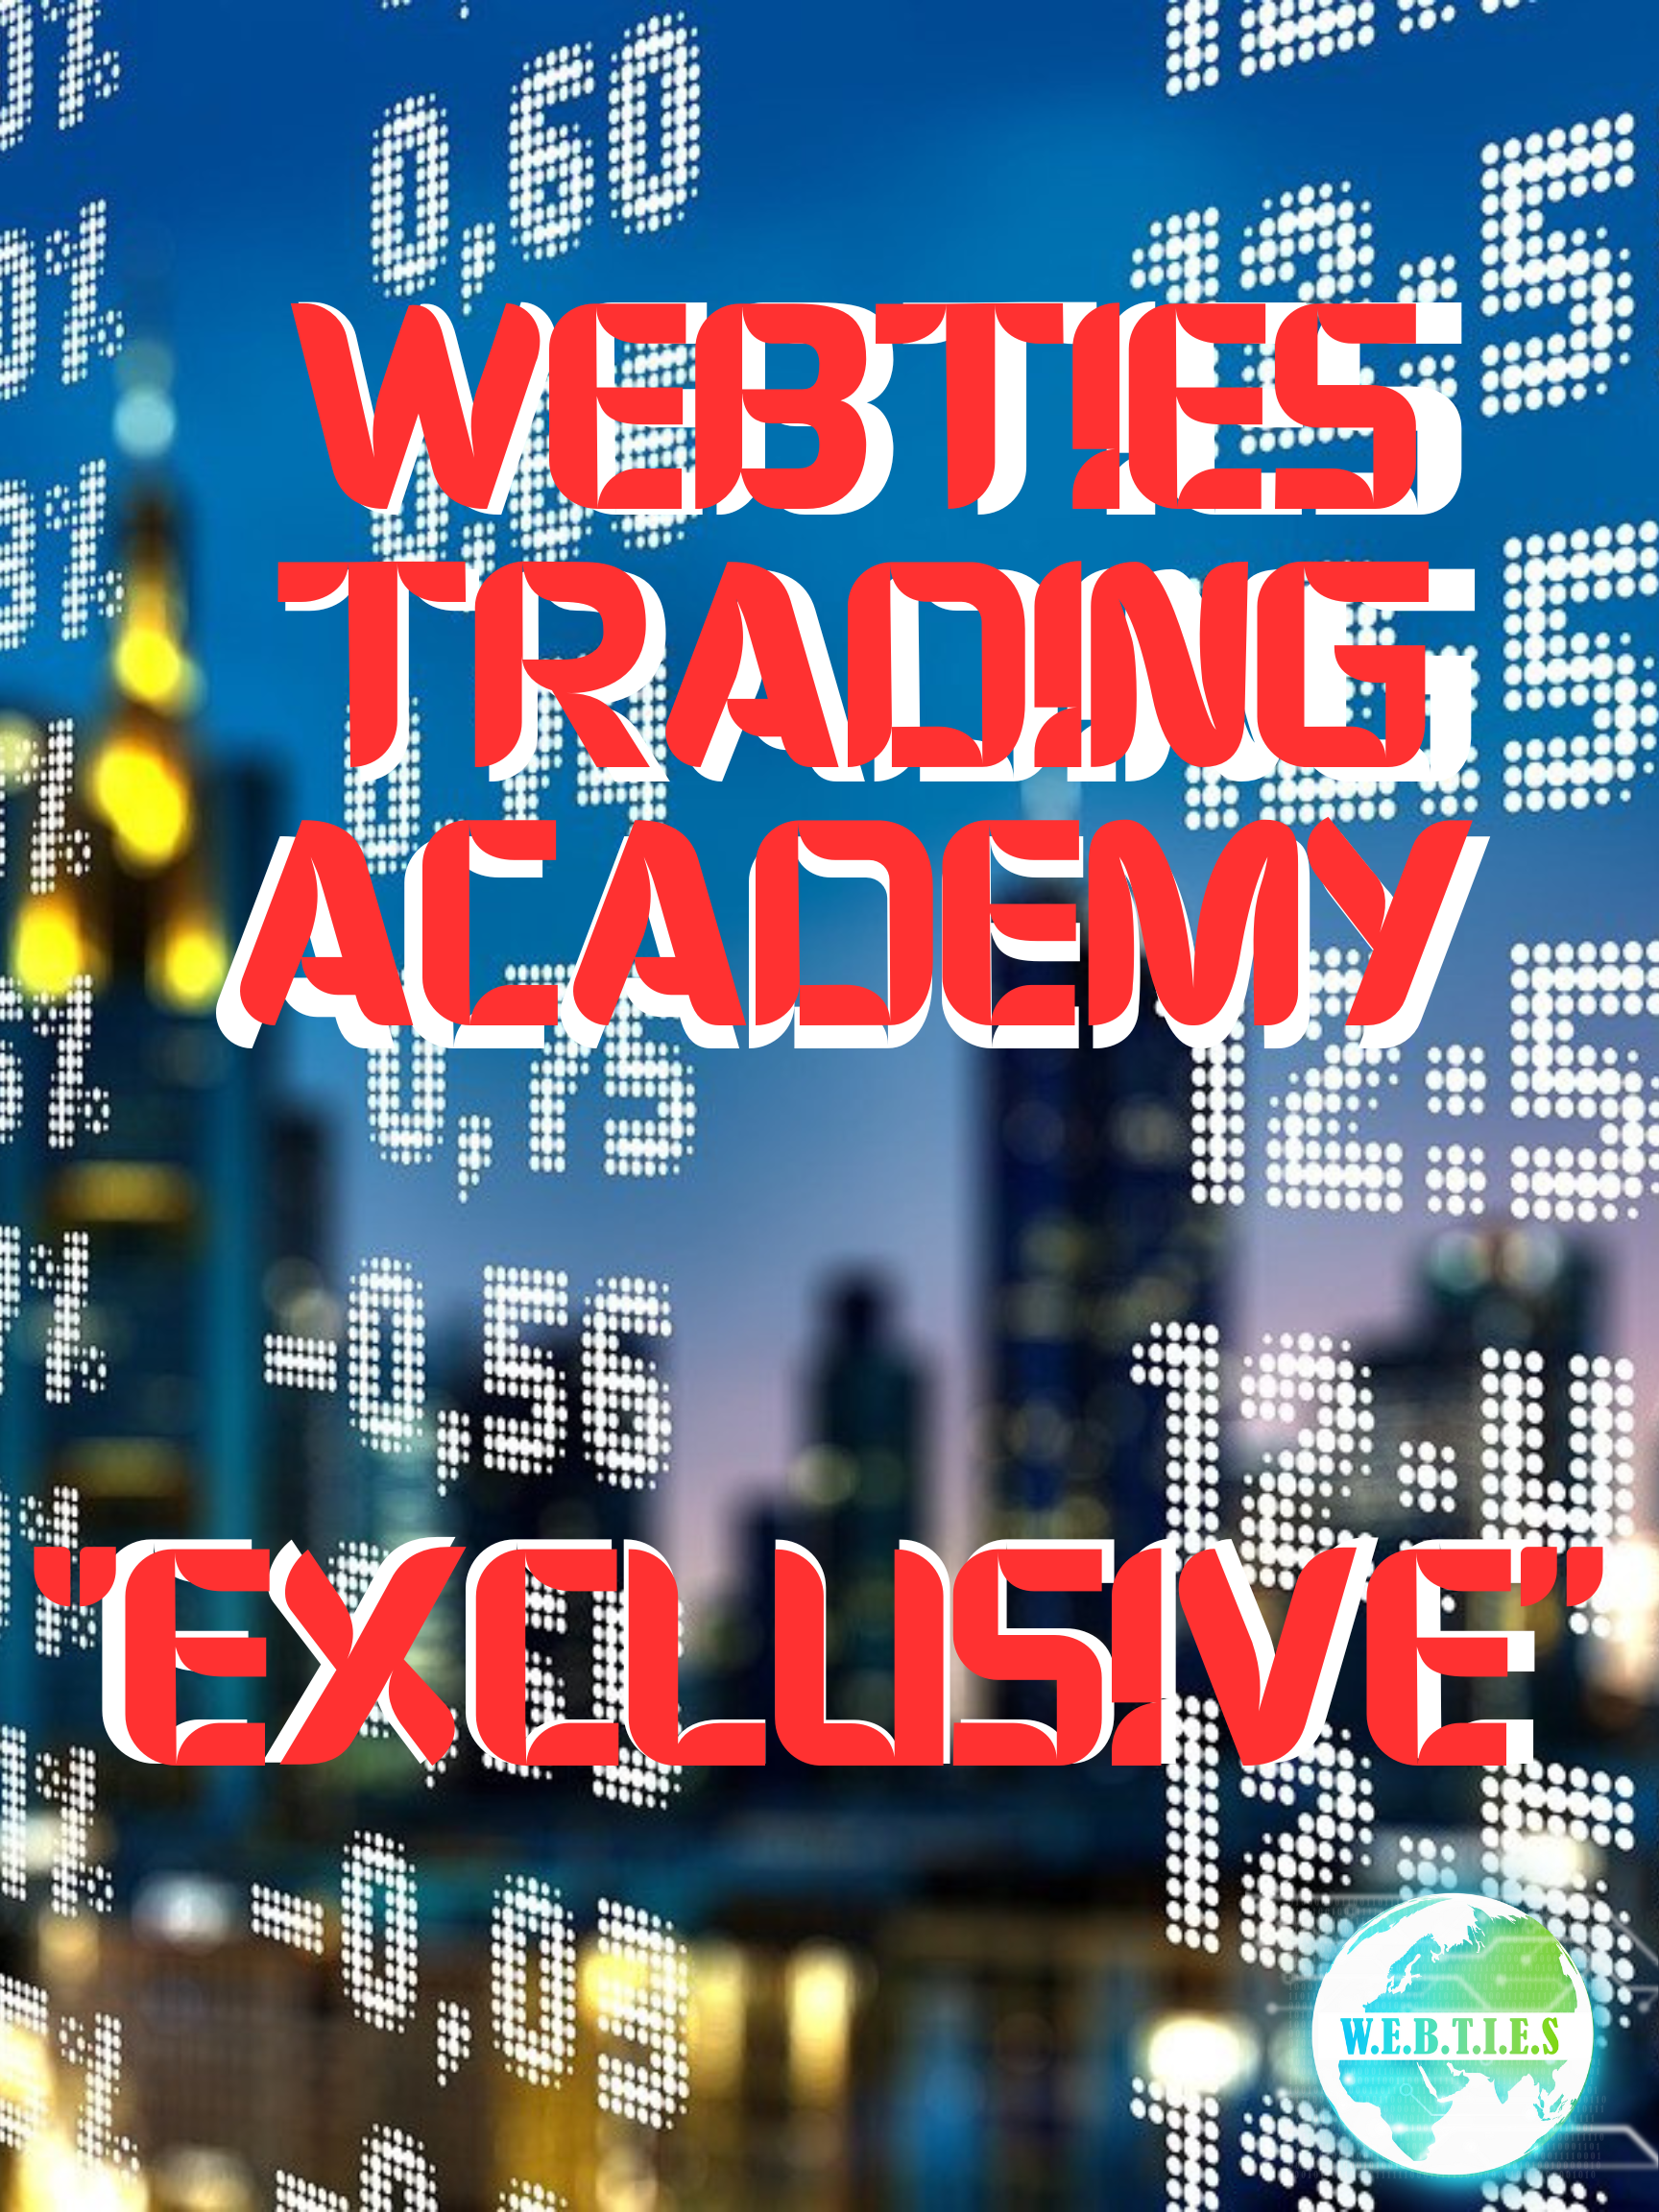 WebTies Trading Academy (ex